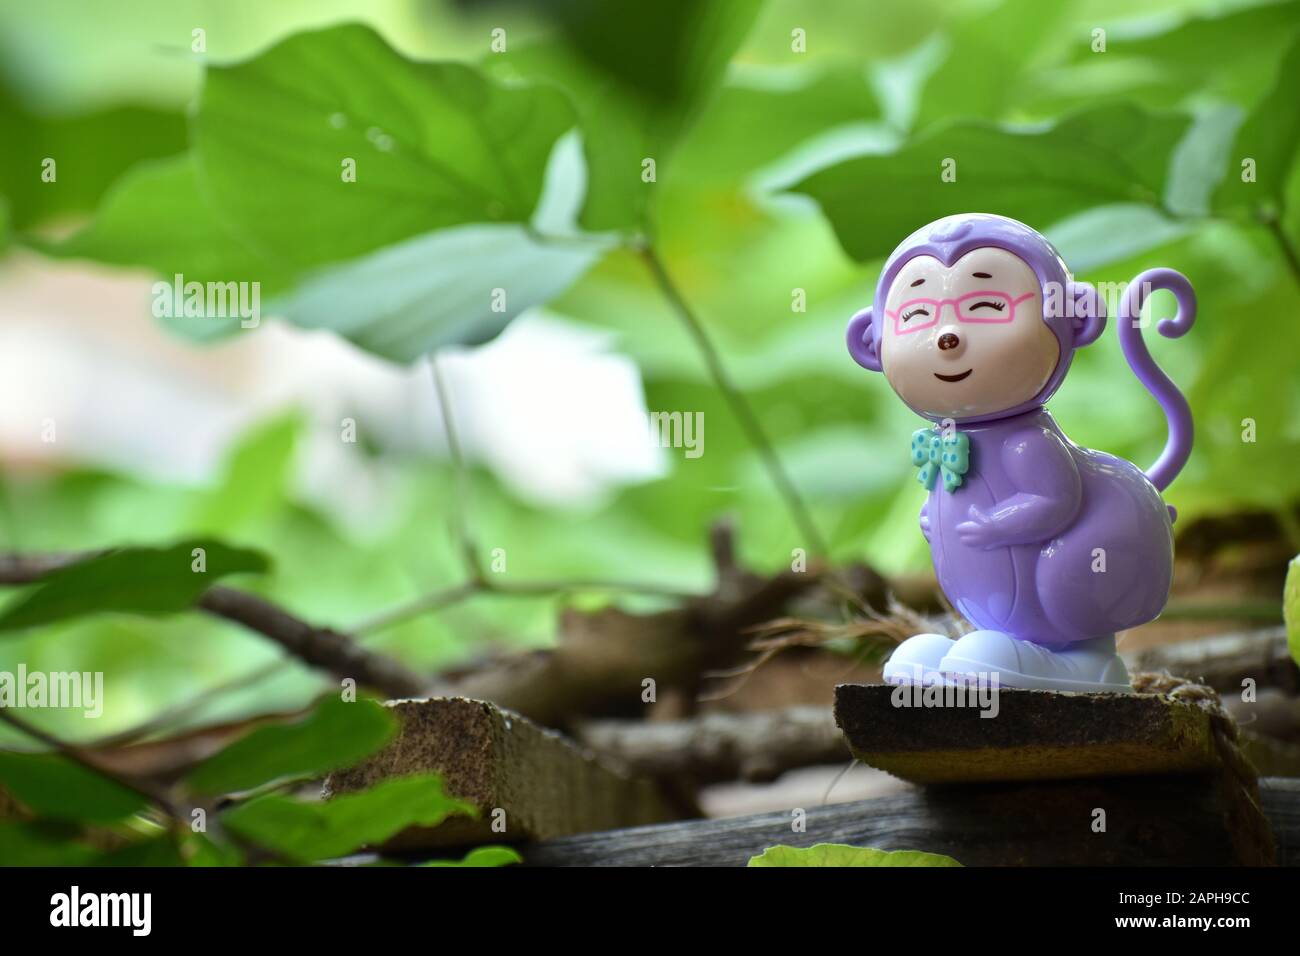 Ritratto di un giocattolo sorridente di scimmia con sfondo verdastro e foglie sfocate Foto Stock